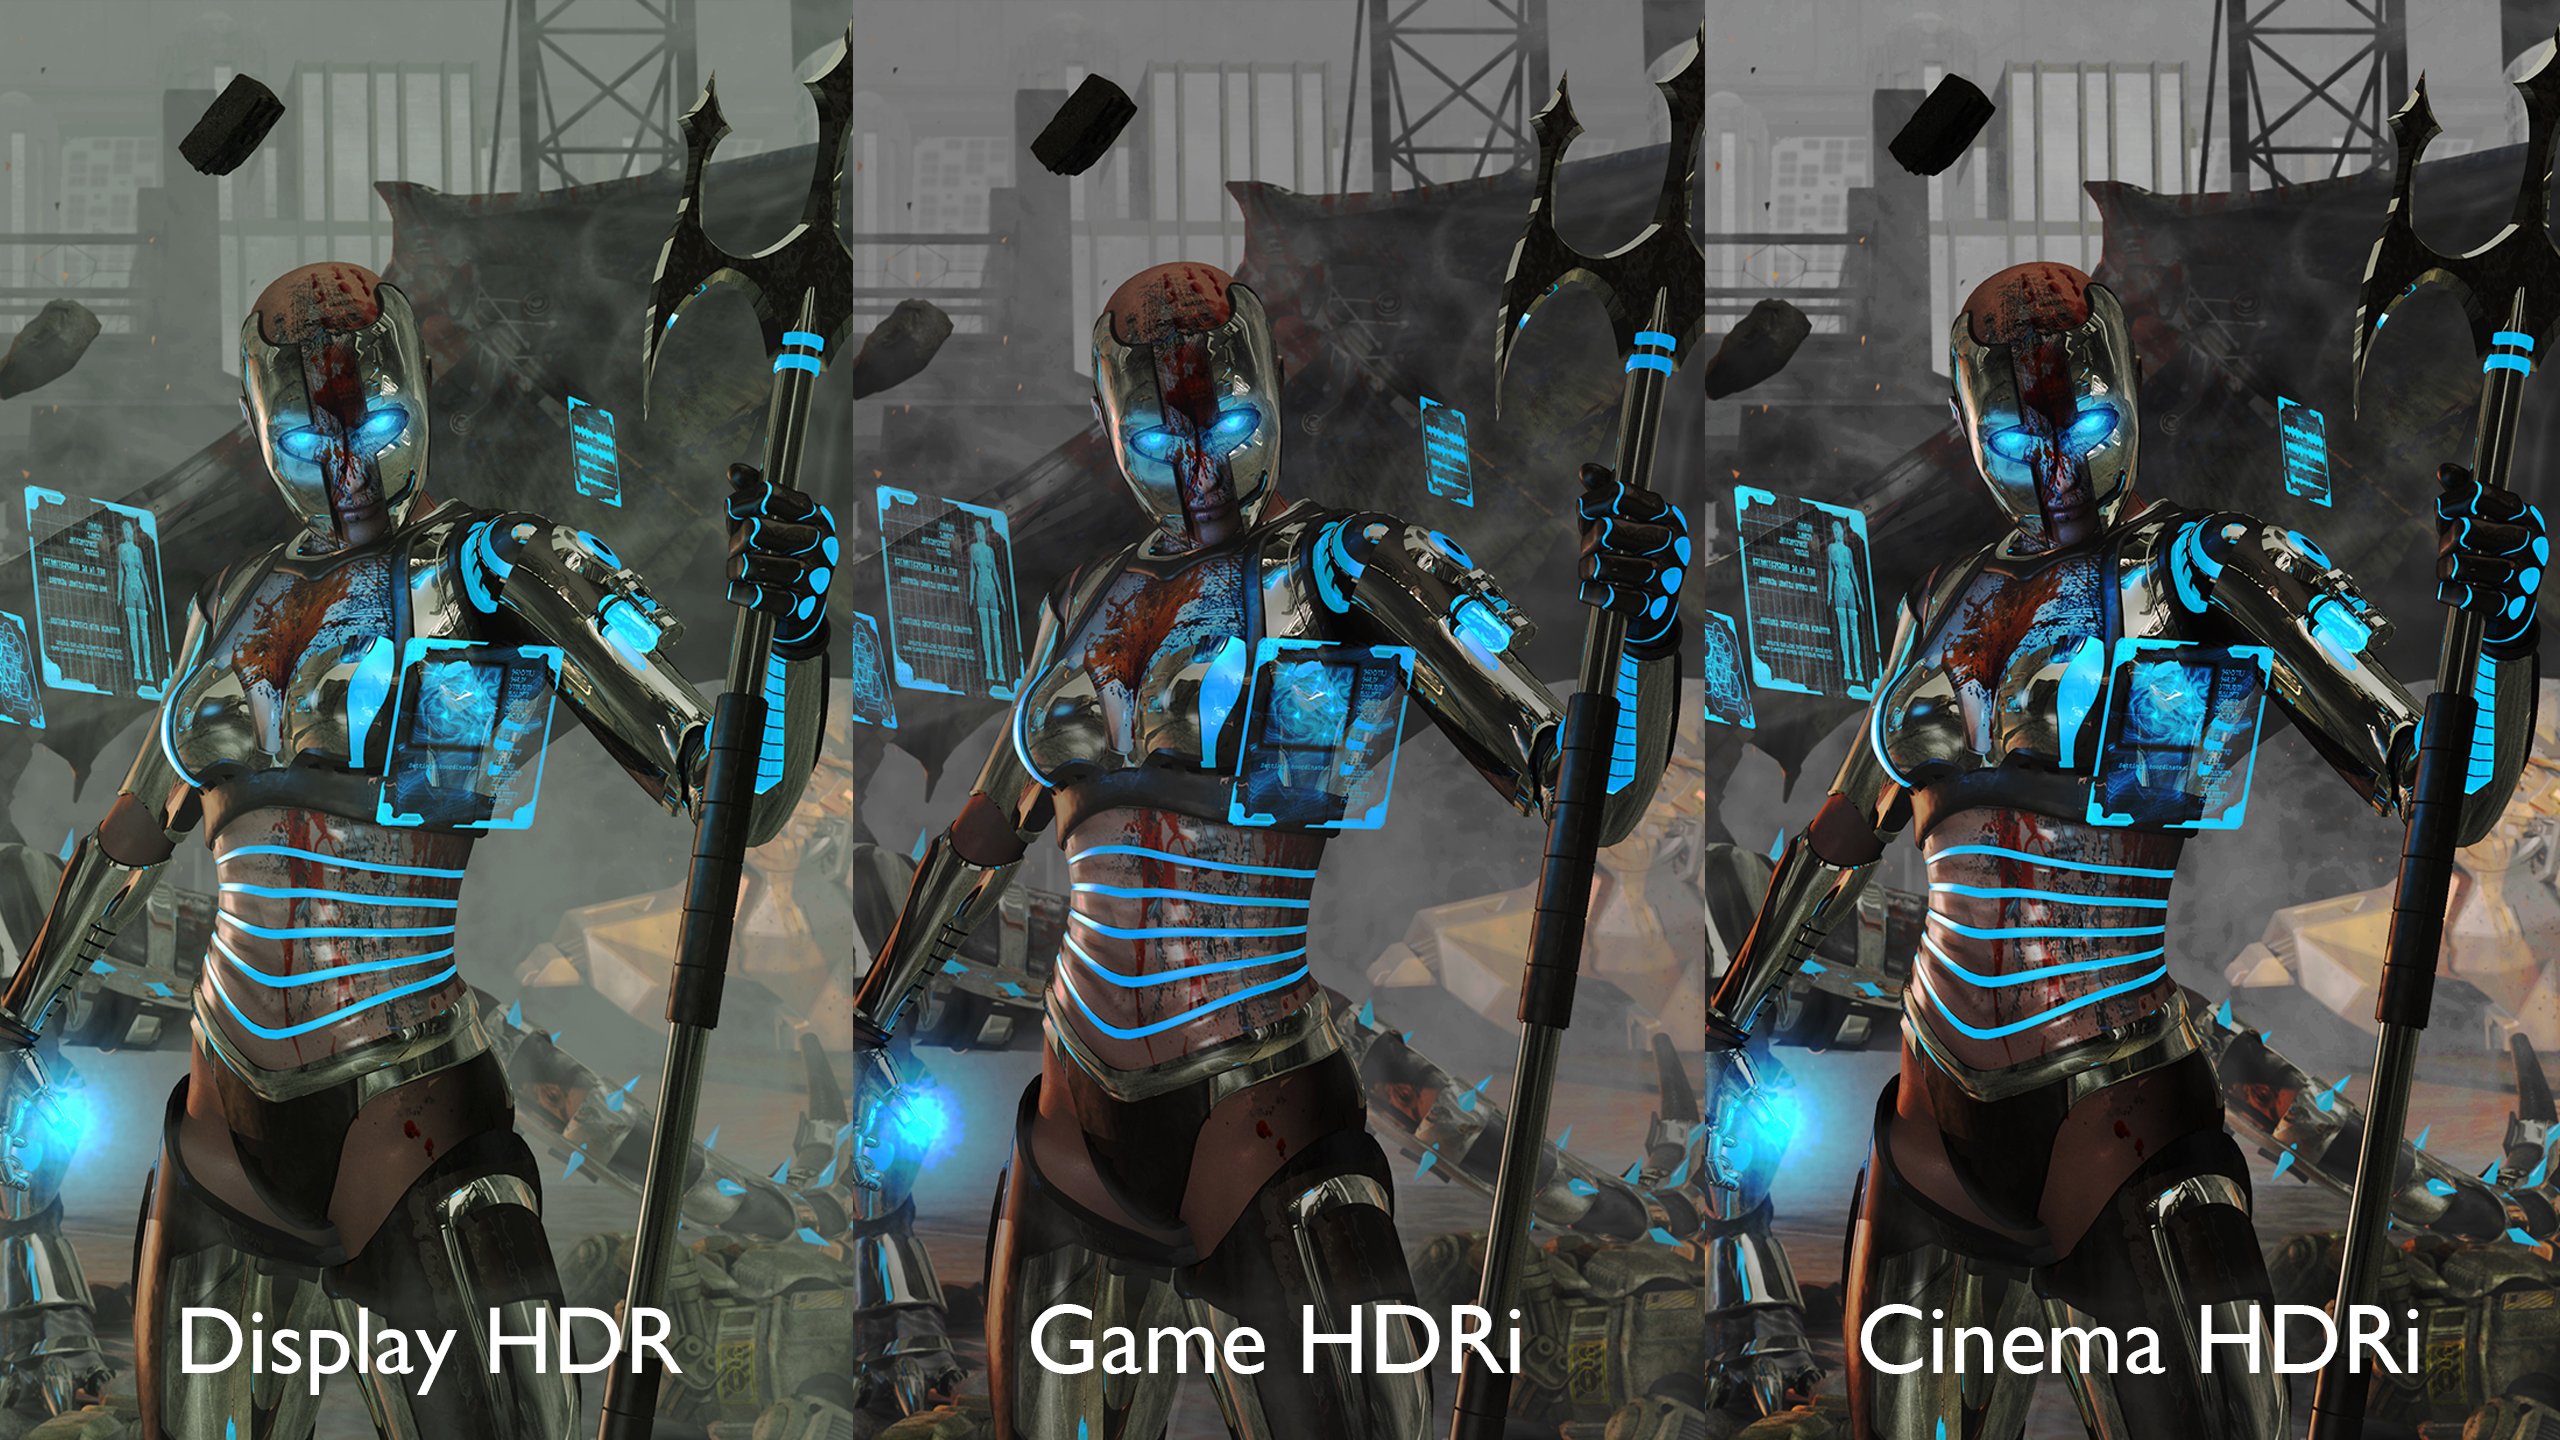 HDRi Image Comparison